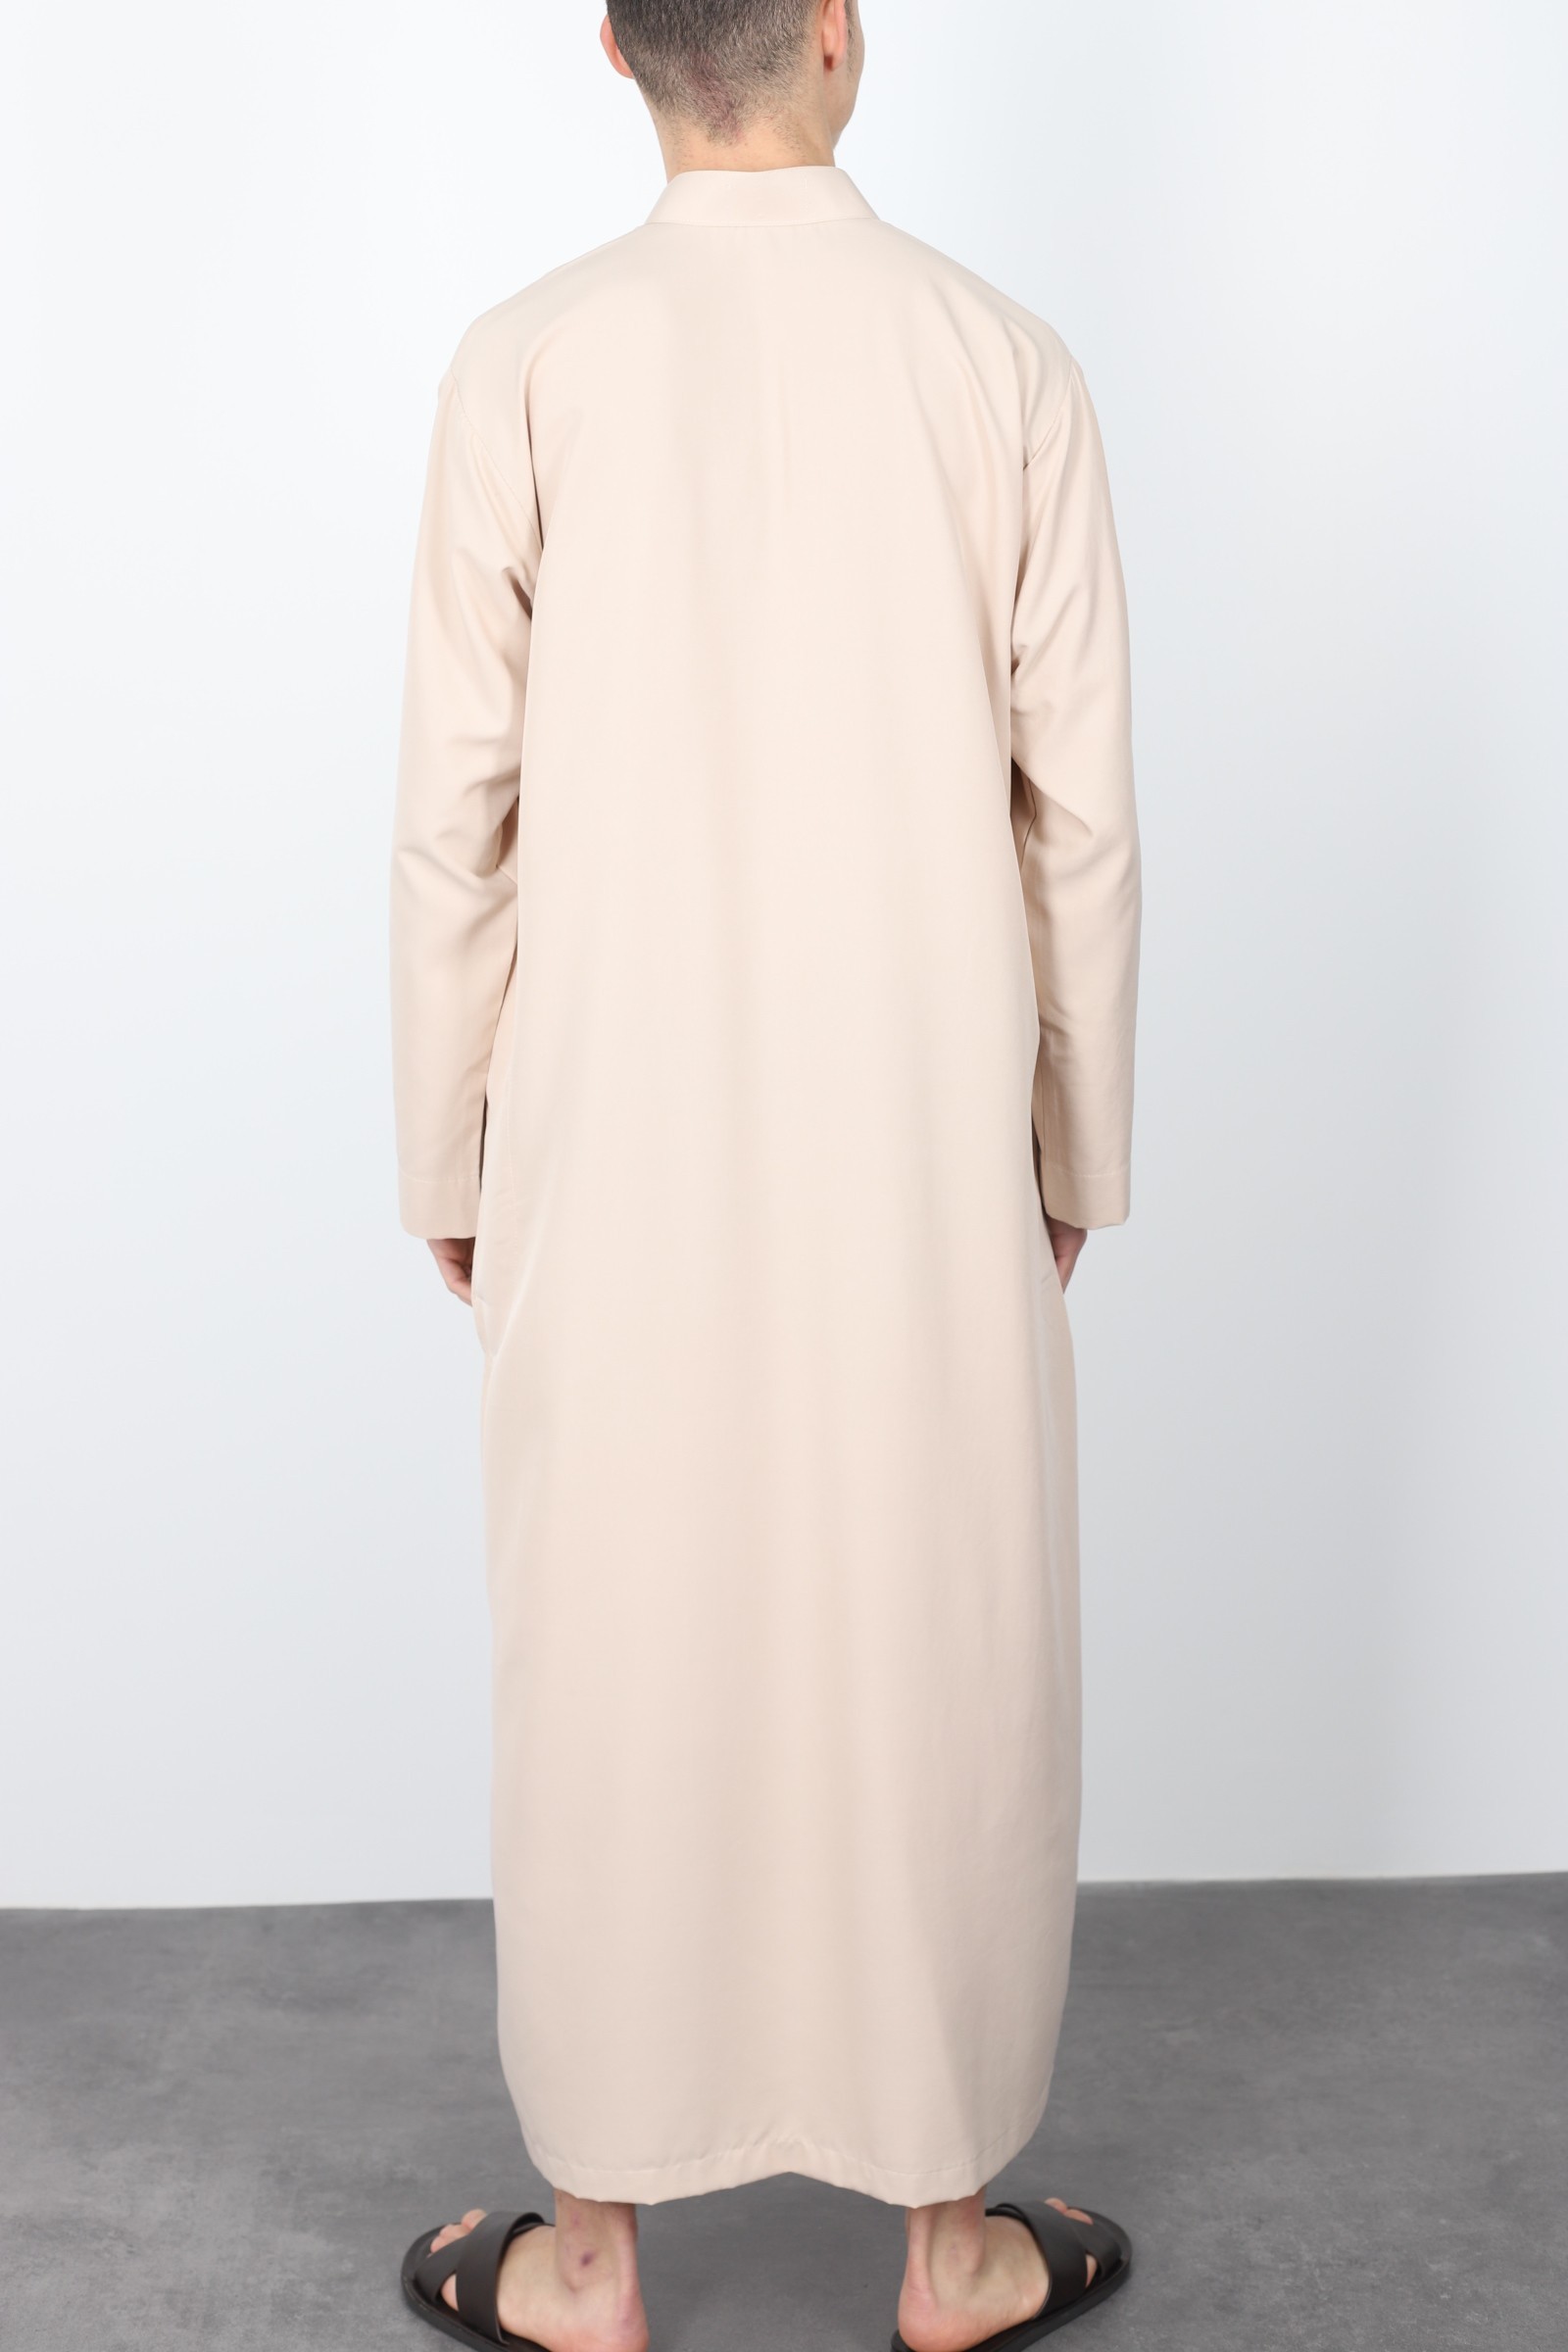 Qamis saoudien homme 2023 nude couleur idéal ramdan ou eid pour fete